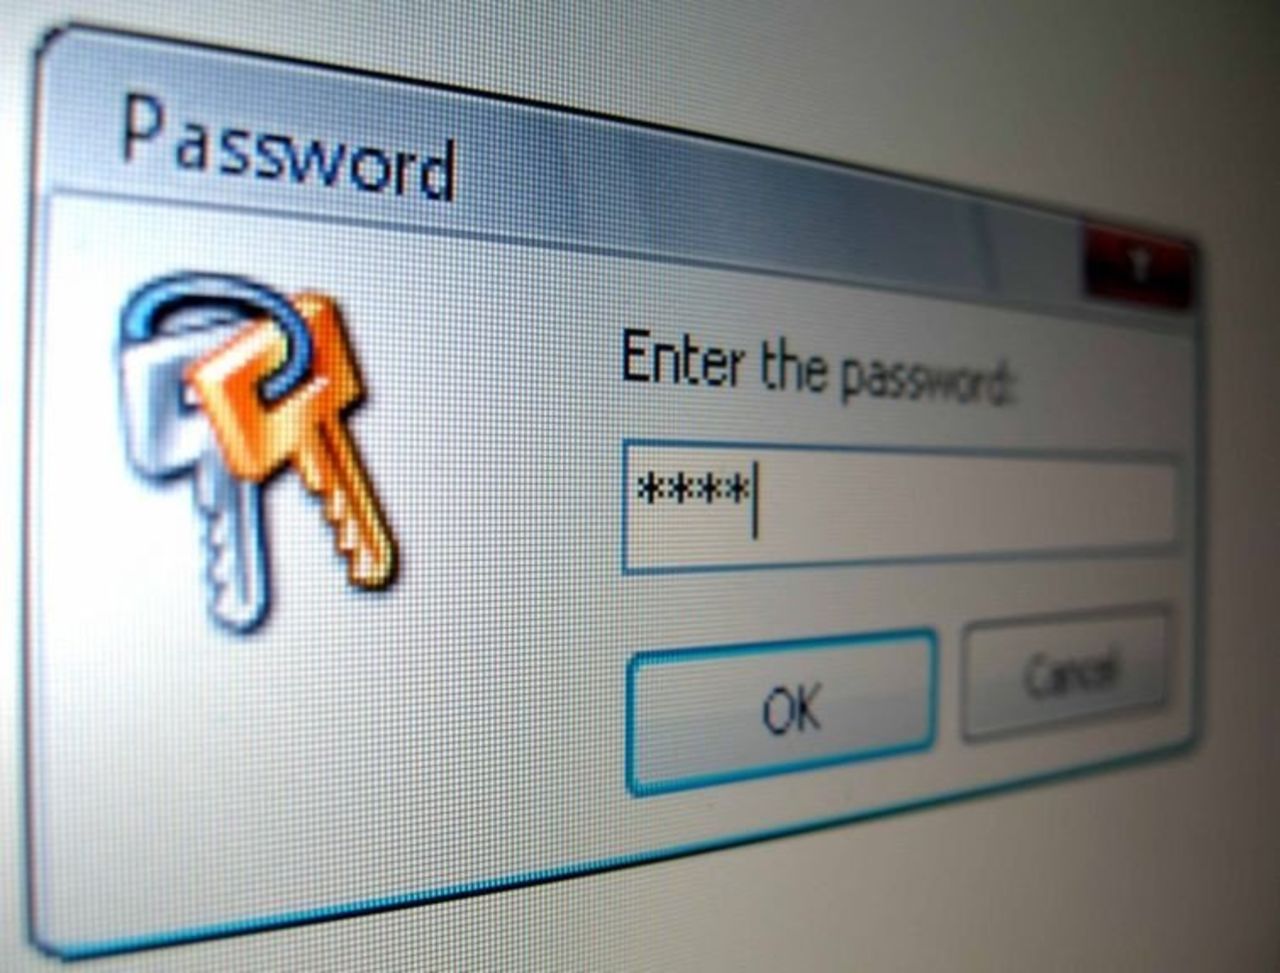 Из-за лени и неаккуратного отношения к паролям россияне лишаются собственных аккаунтов в Интернете